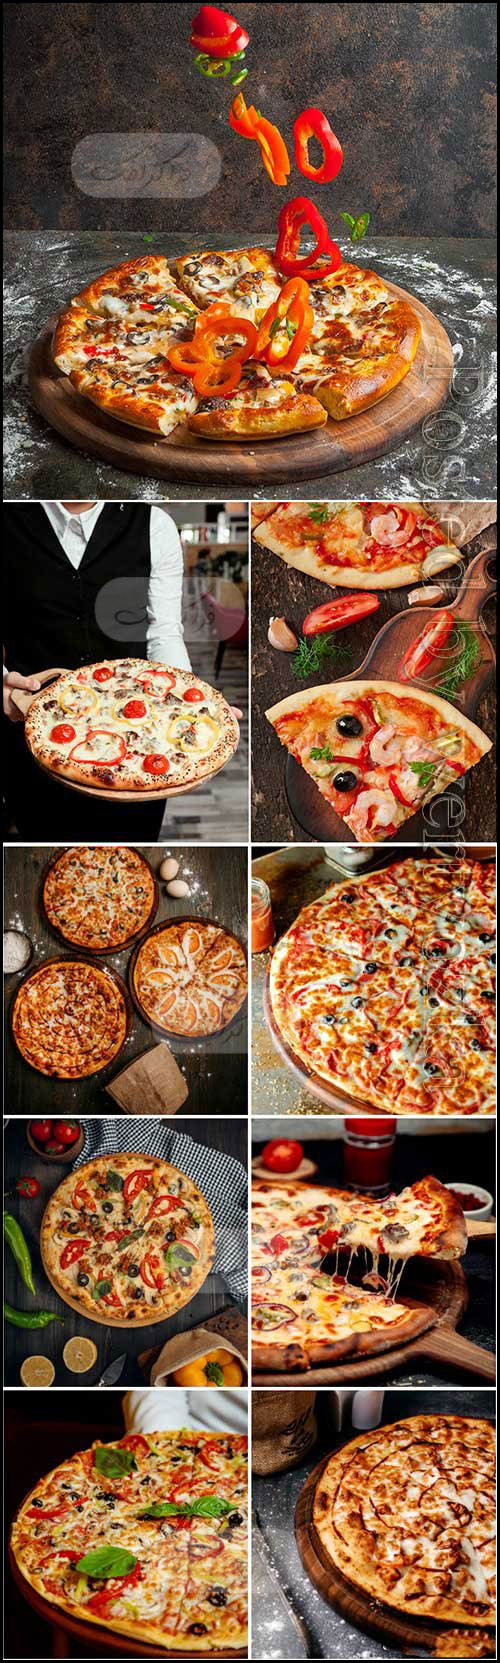 دانلود تصاویر استوک پیتزا - Pizza Stock Images - شماره 10